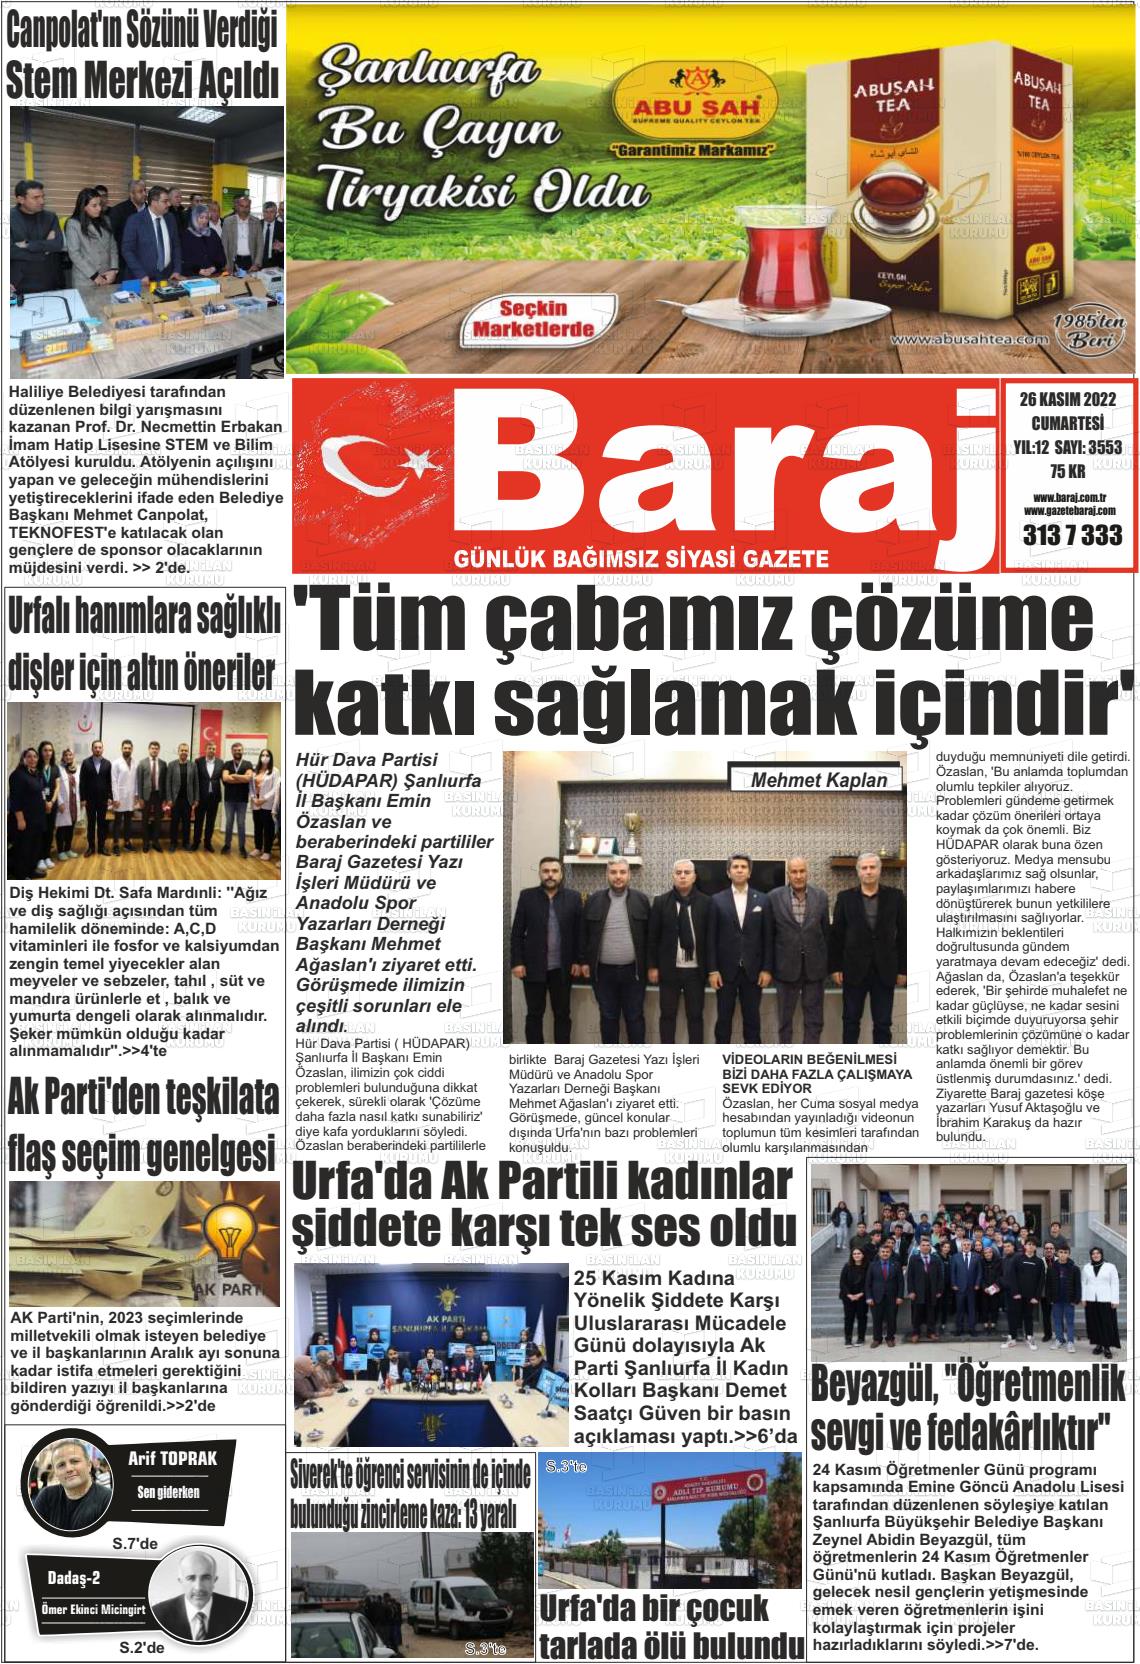 26 Kasım 2022 Baraj Gazete Manşeti